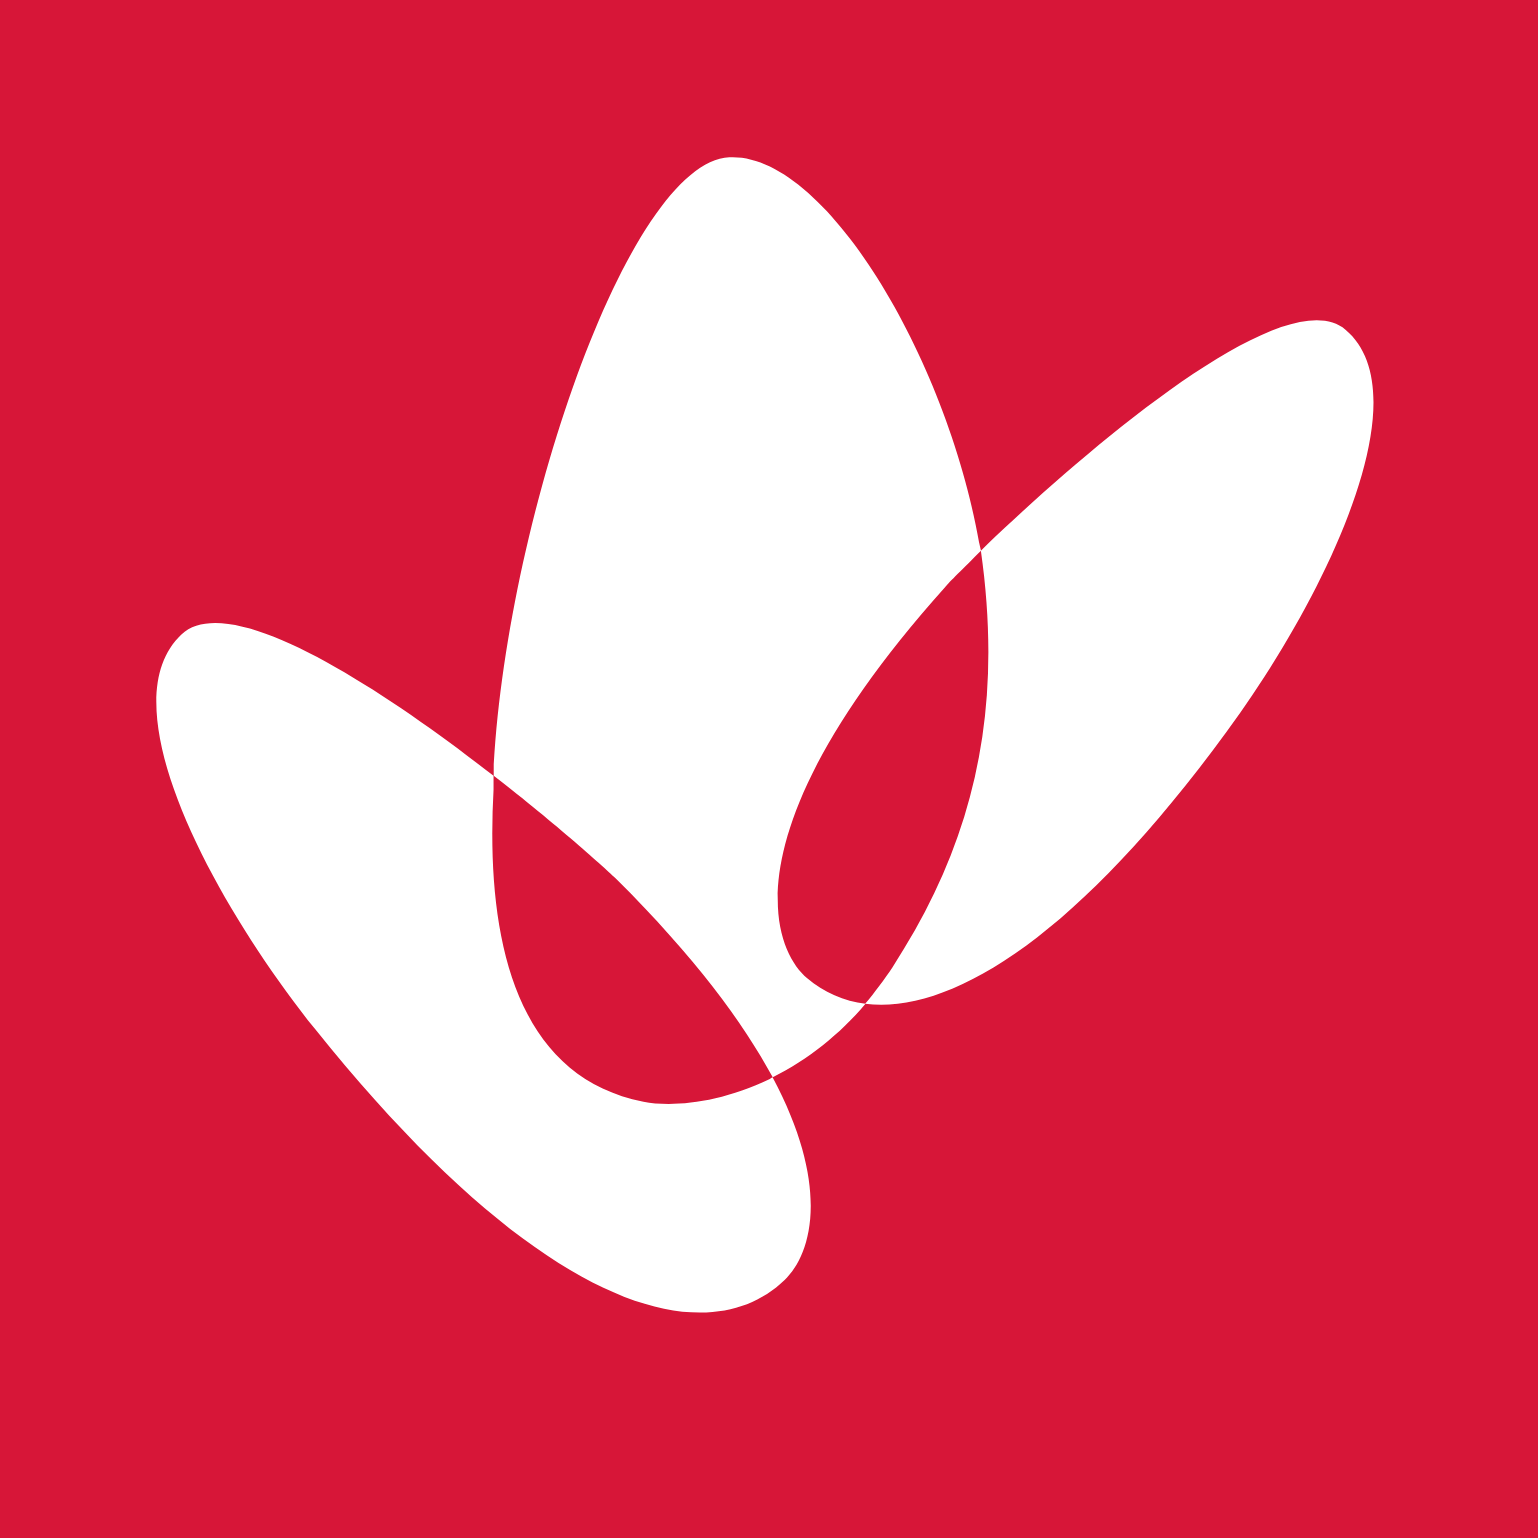 Woodside Energy logo (PNG transparent)